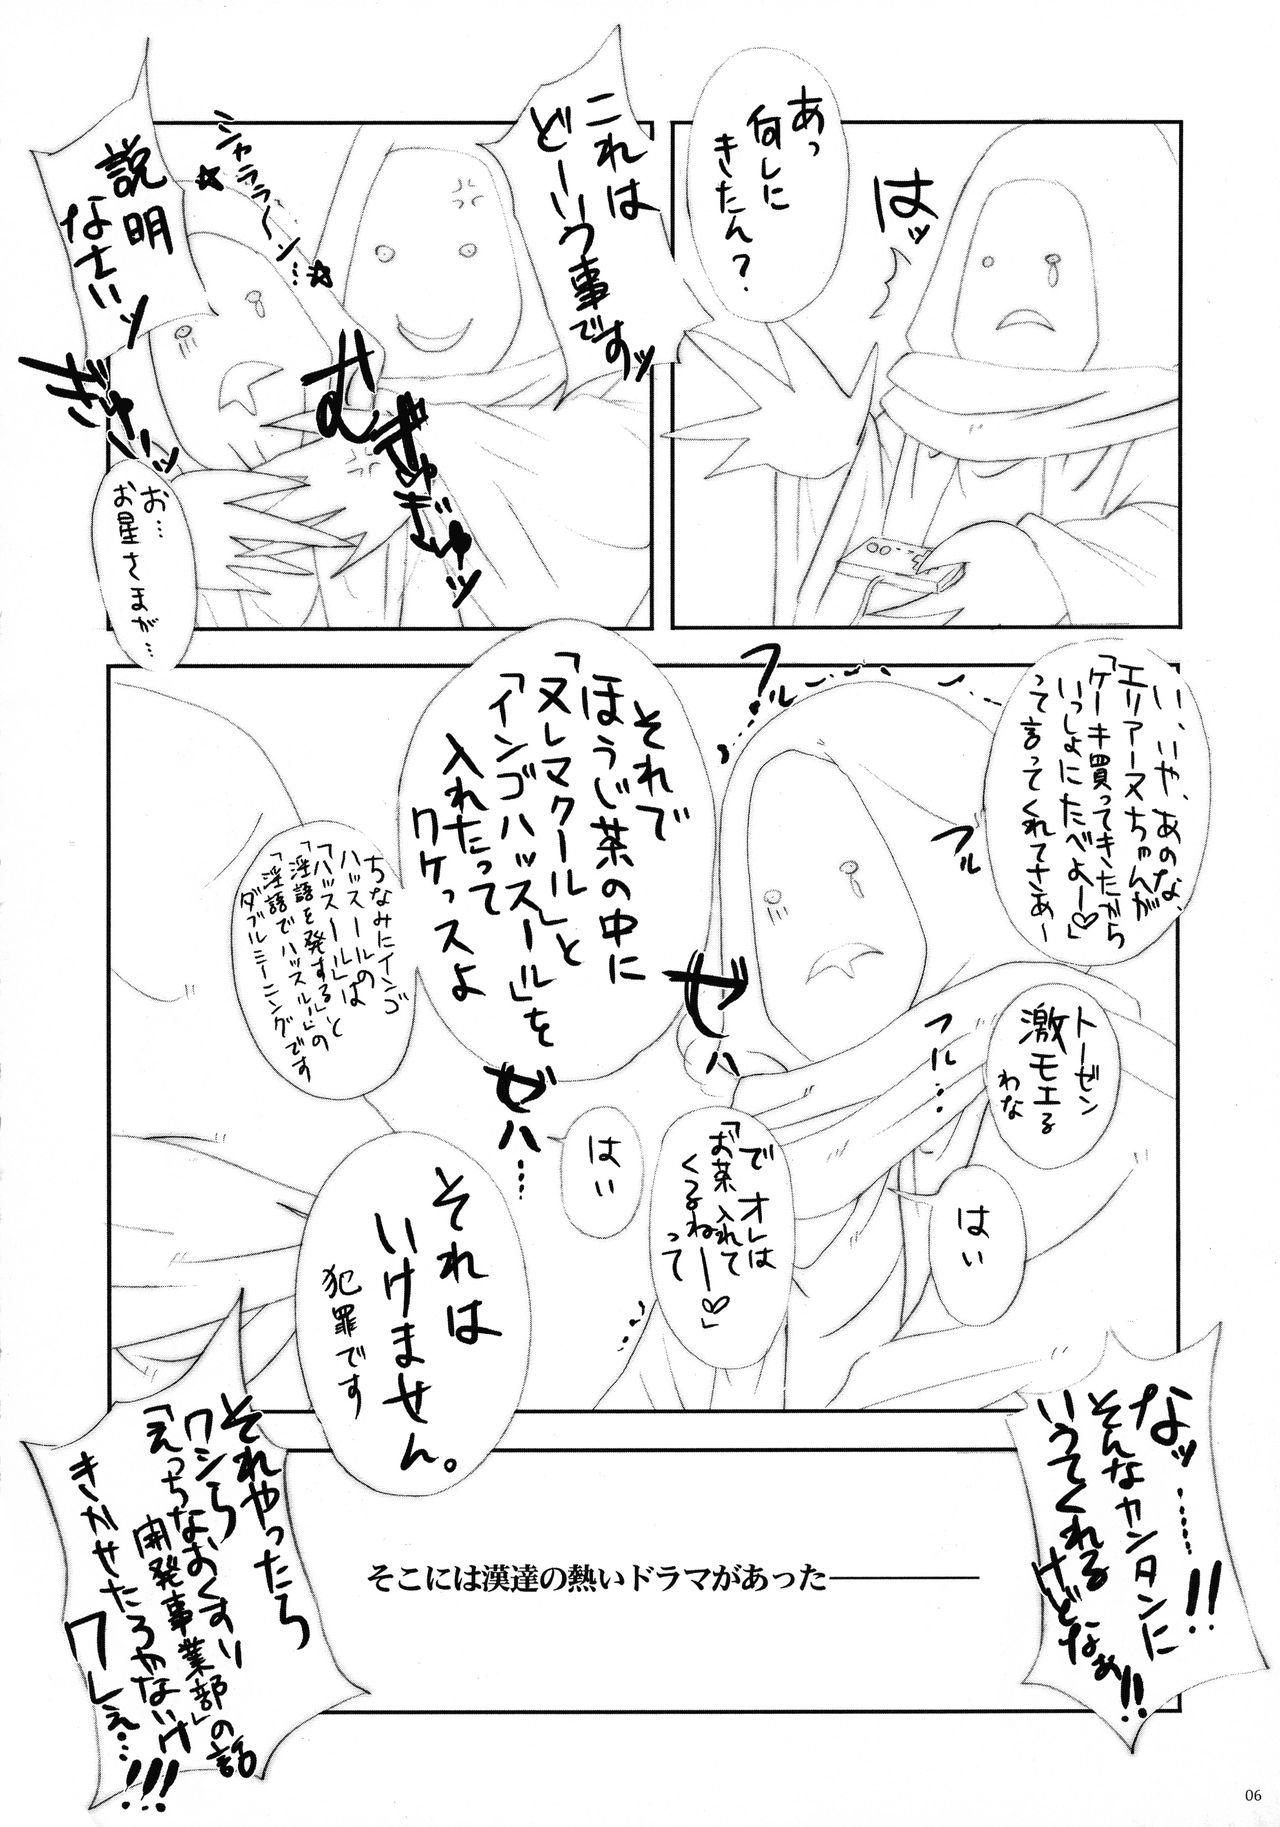 Chaturbate Akumakko Imouto gura Biton ★ Sai - Original Gordibuena - Page 6